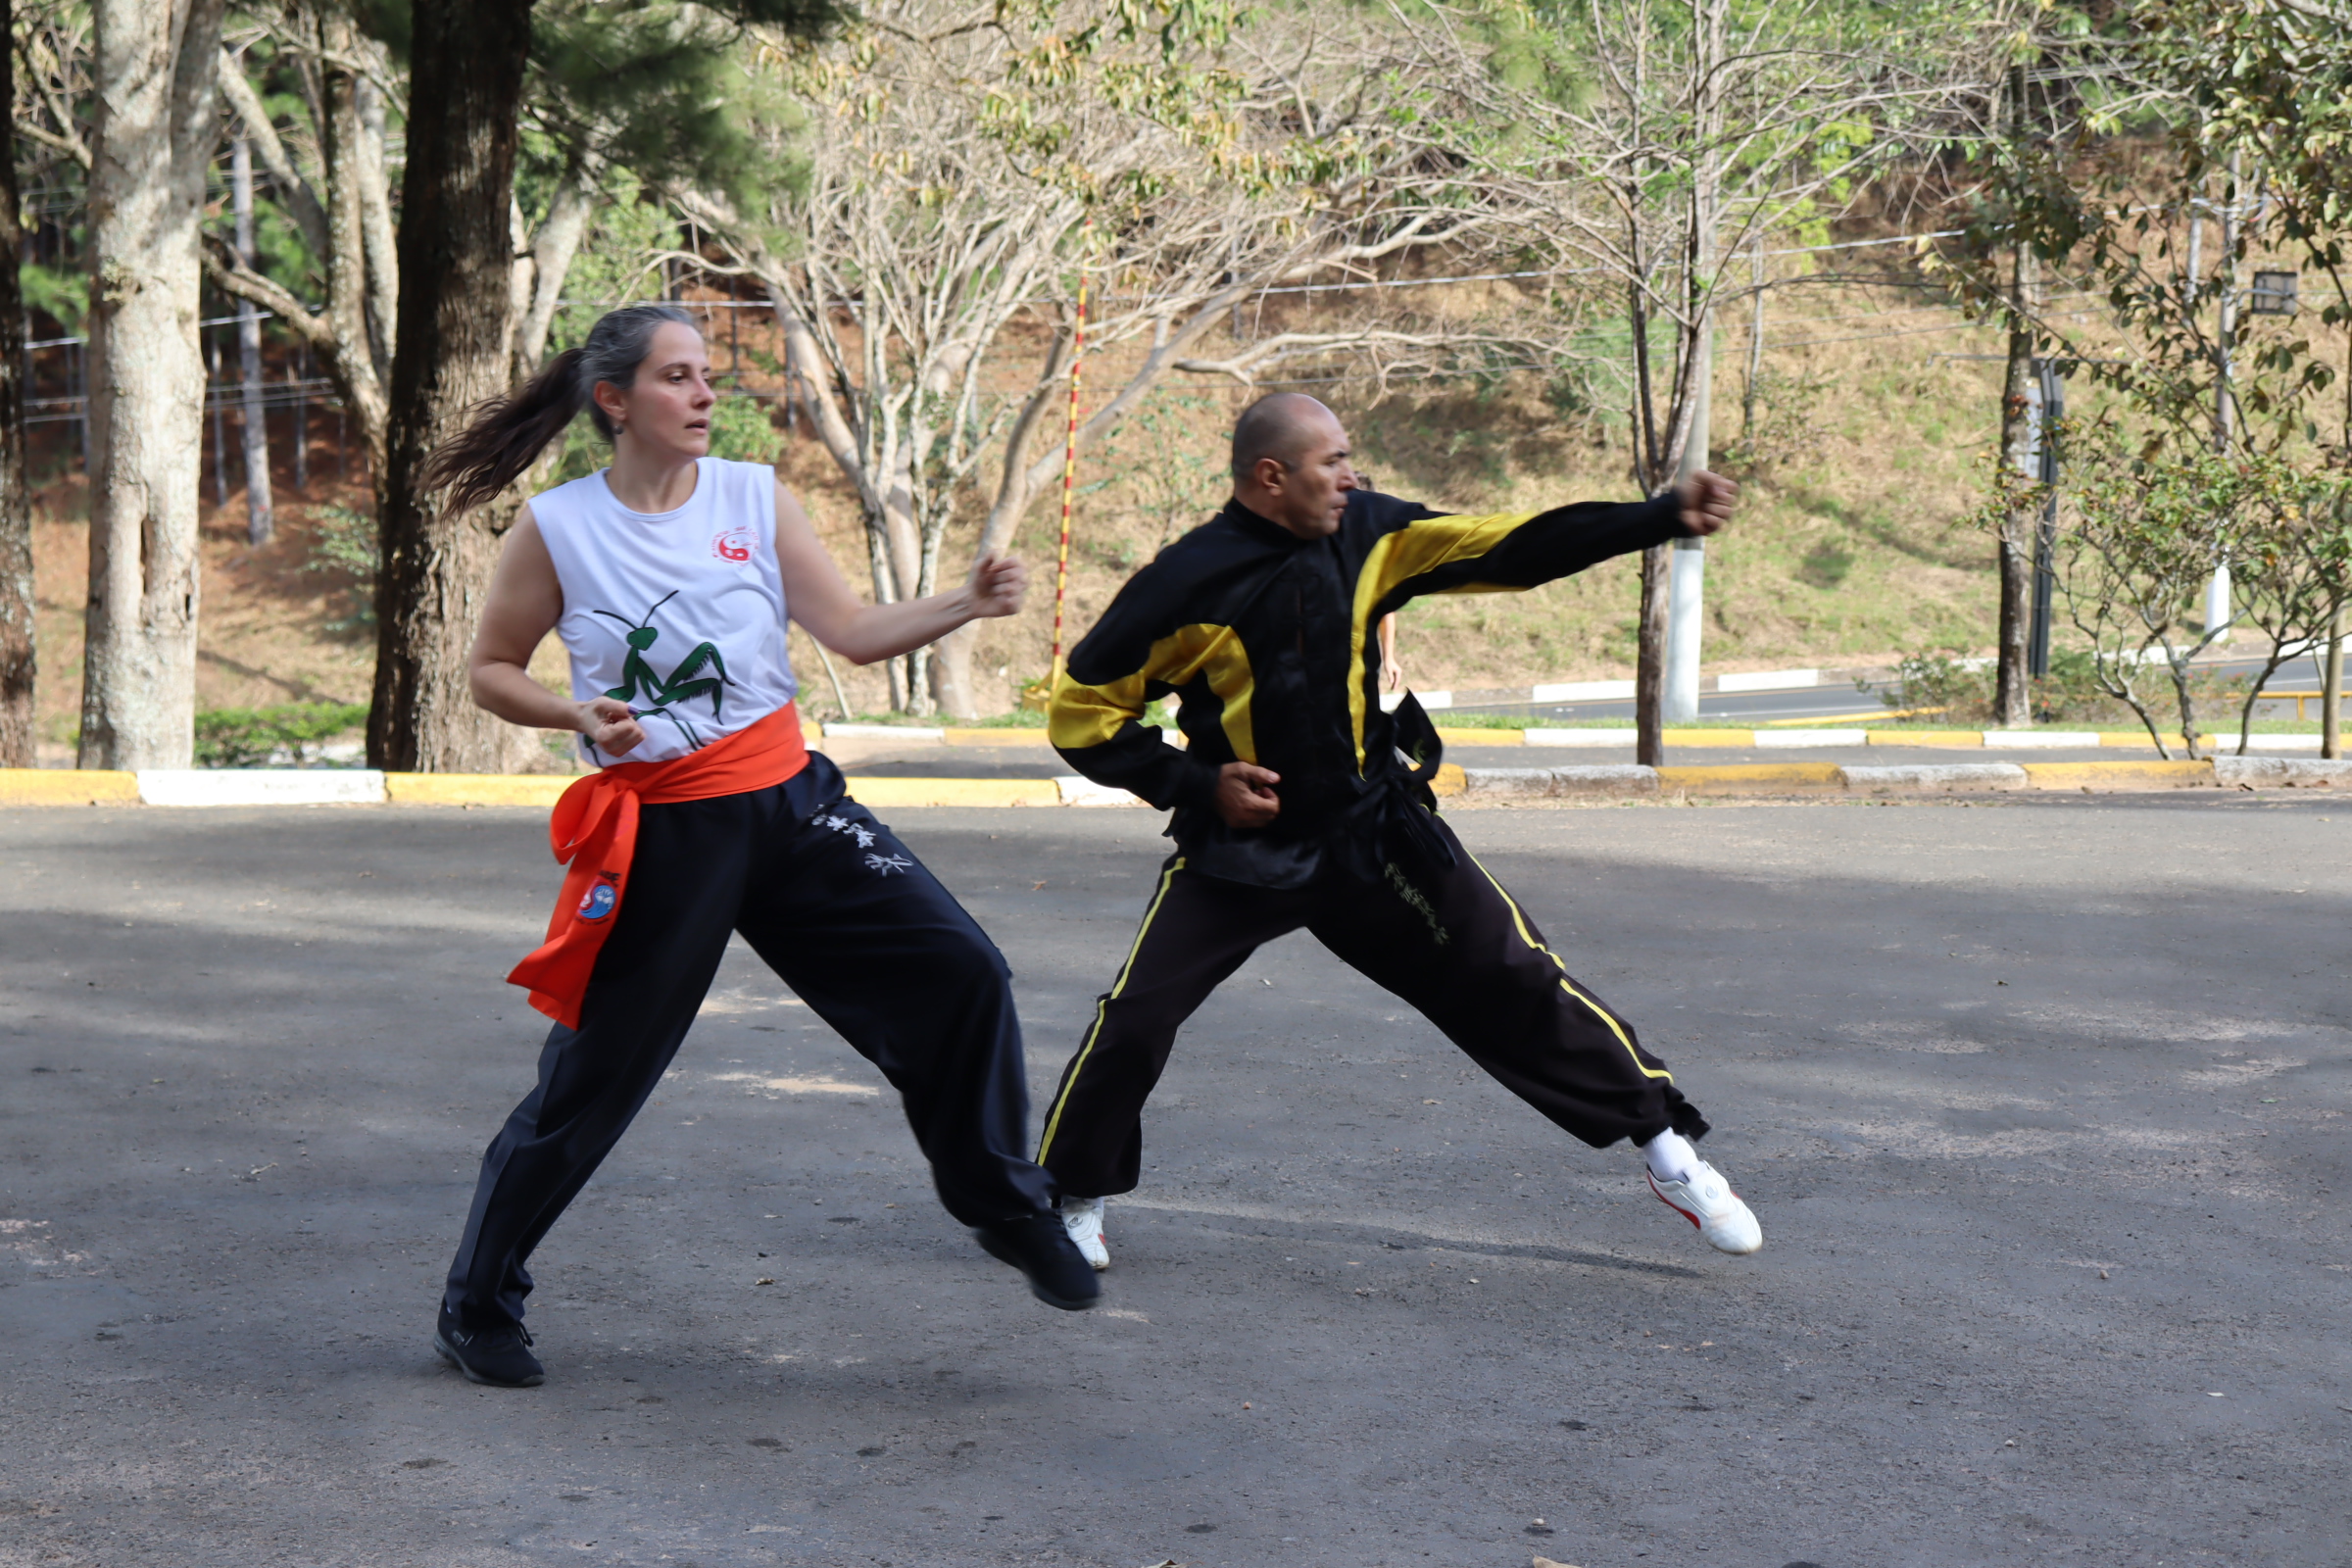 Academia promoveu treino de kung fu ao ar livre